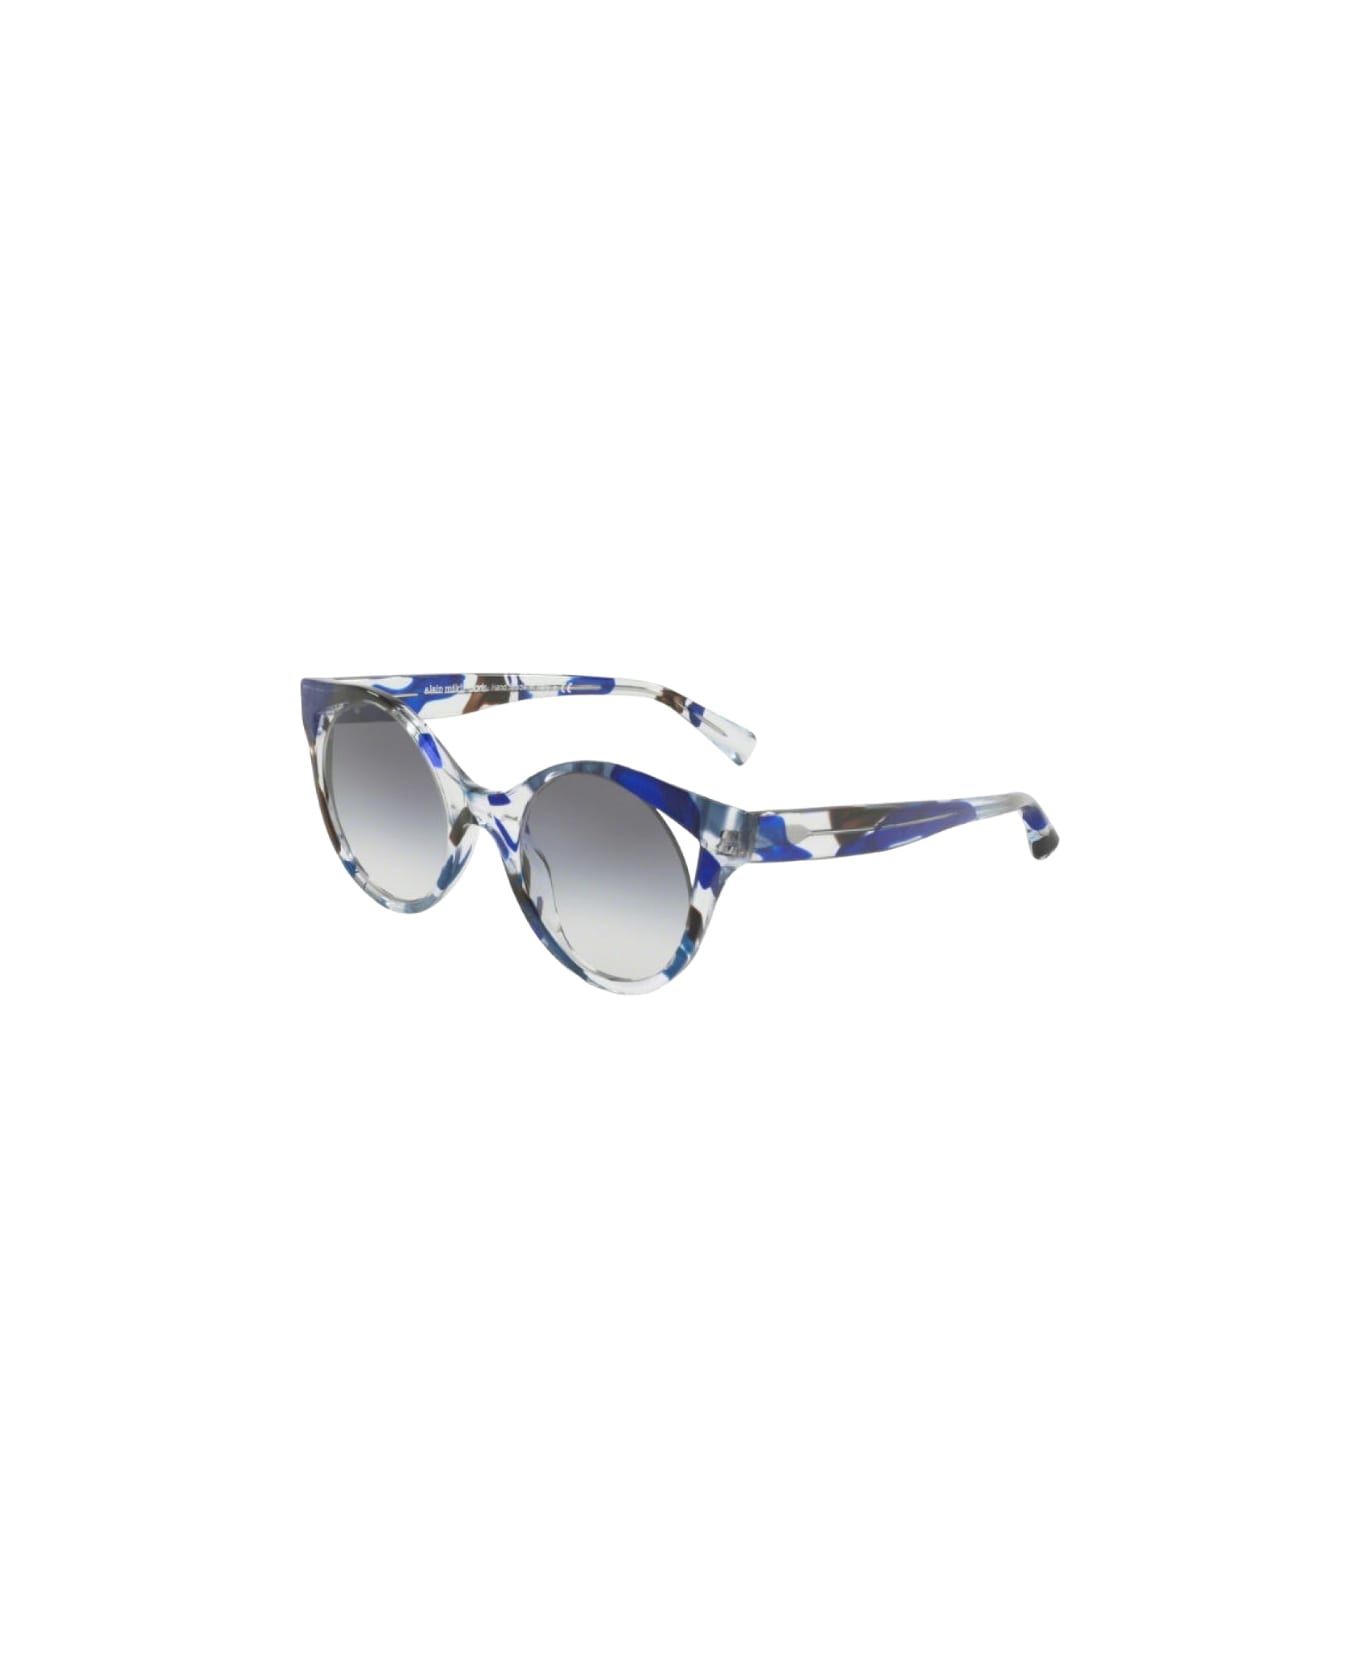 Alain Mikli Rayce - 5033 - Black / Blu Sunglasses サングラス